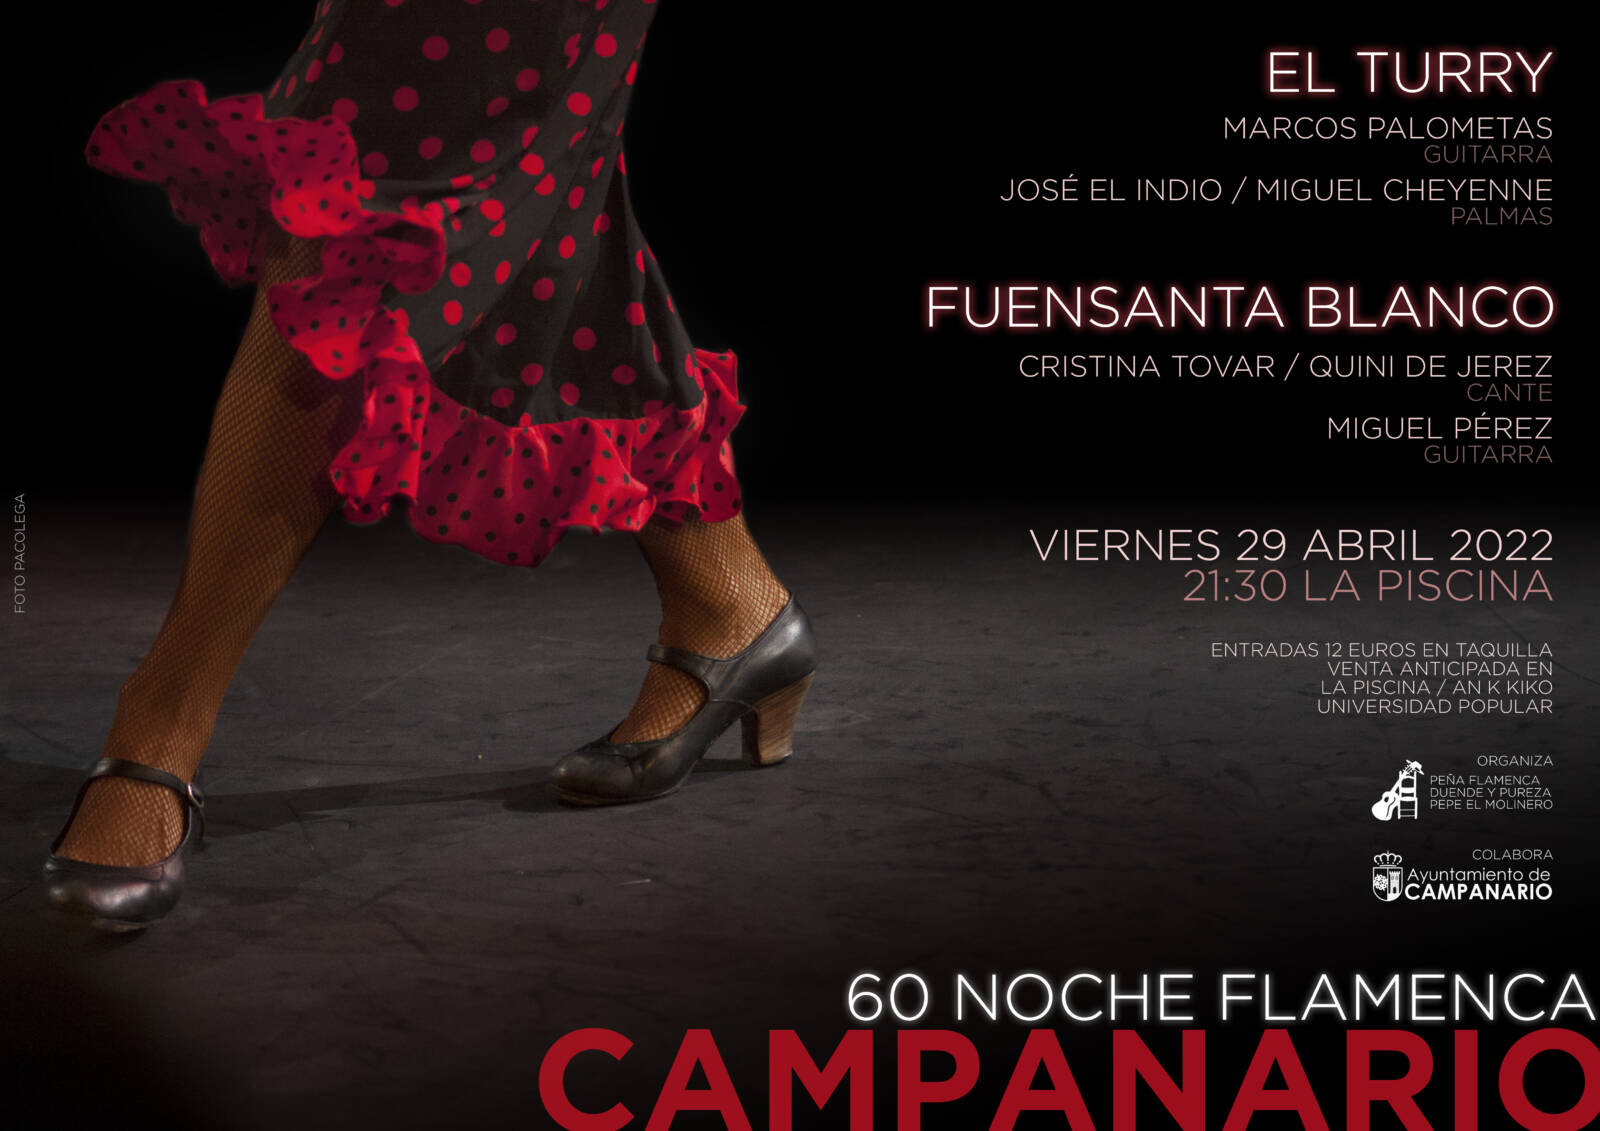 60 Noche Flamenca Campanario